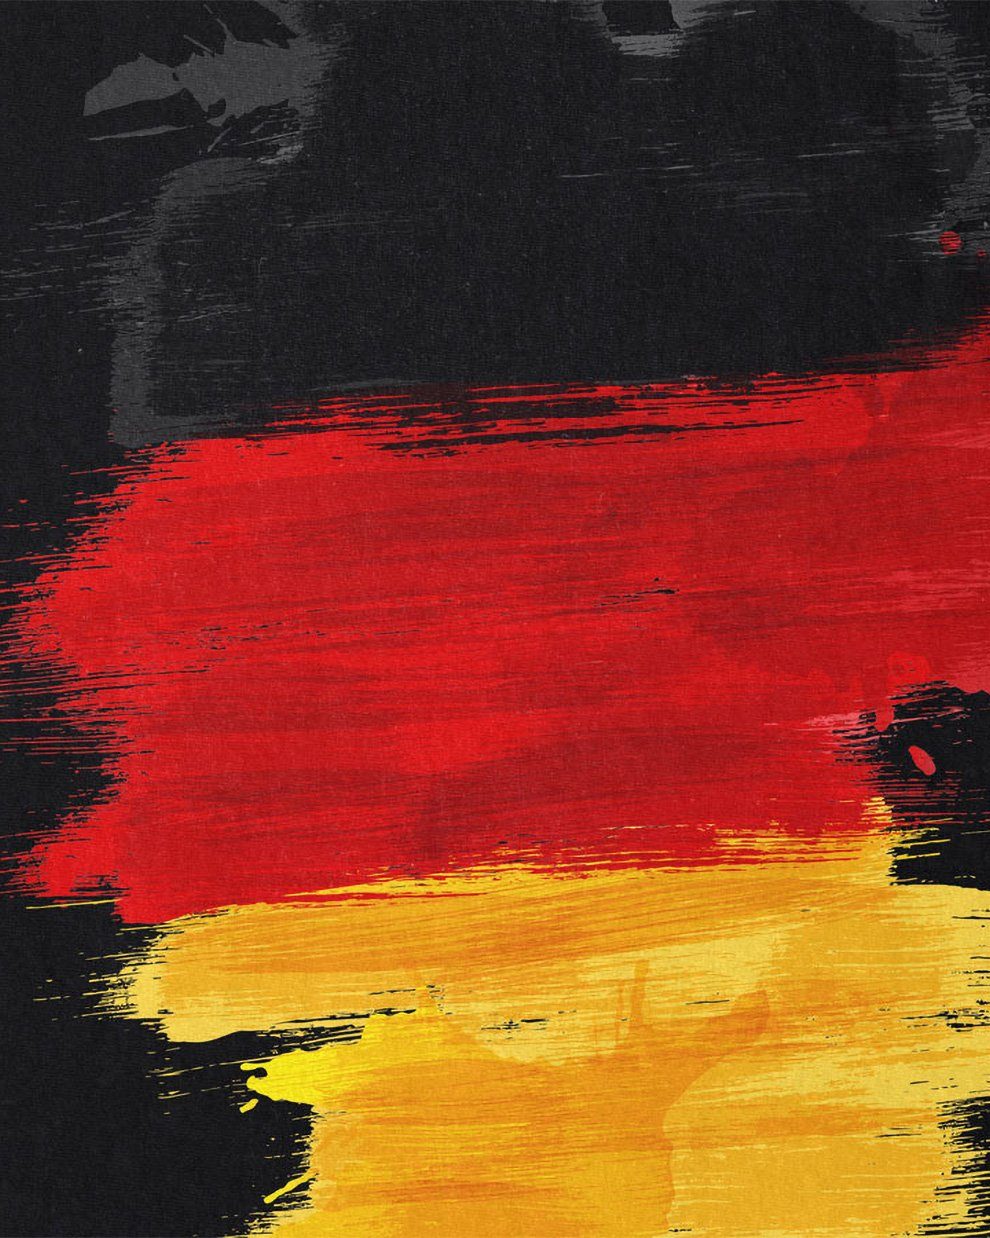 Flagge T-Shirt WM Sport schwarz EM Germany Print-Shirt Fußball style3 Fahne Deutschland Herren